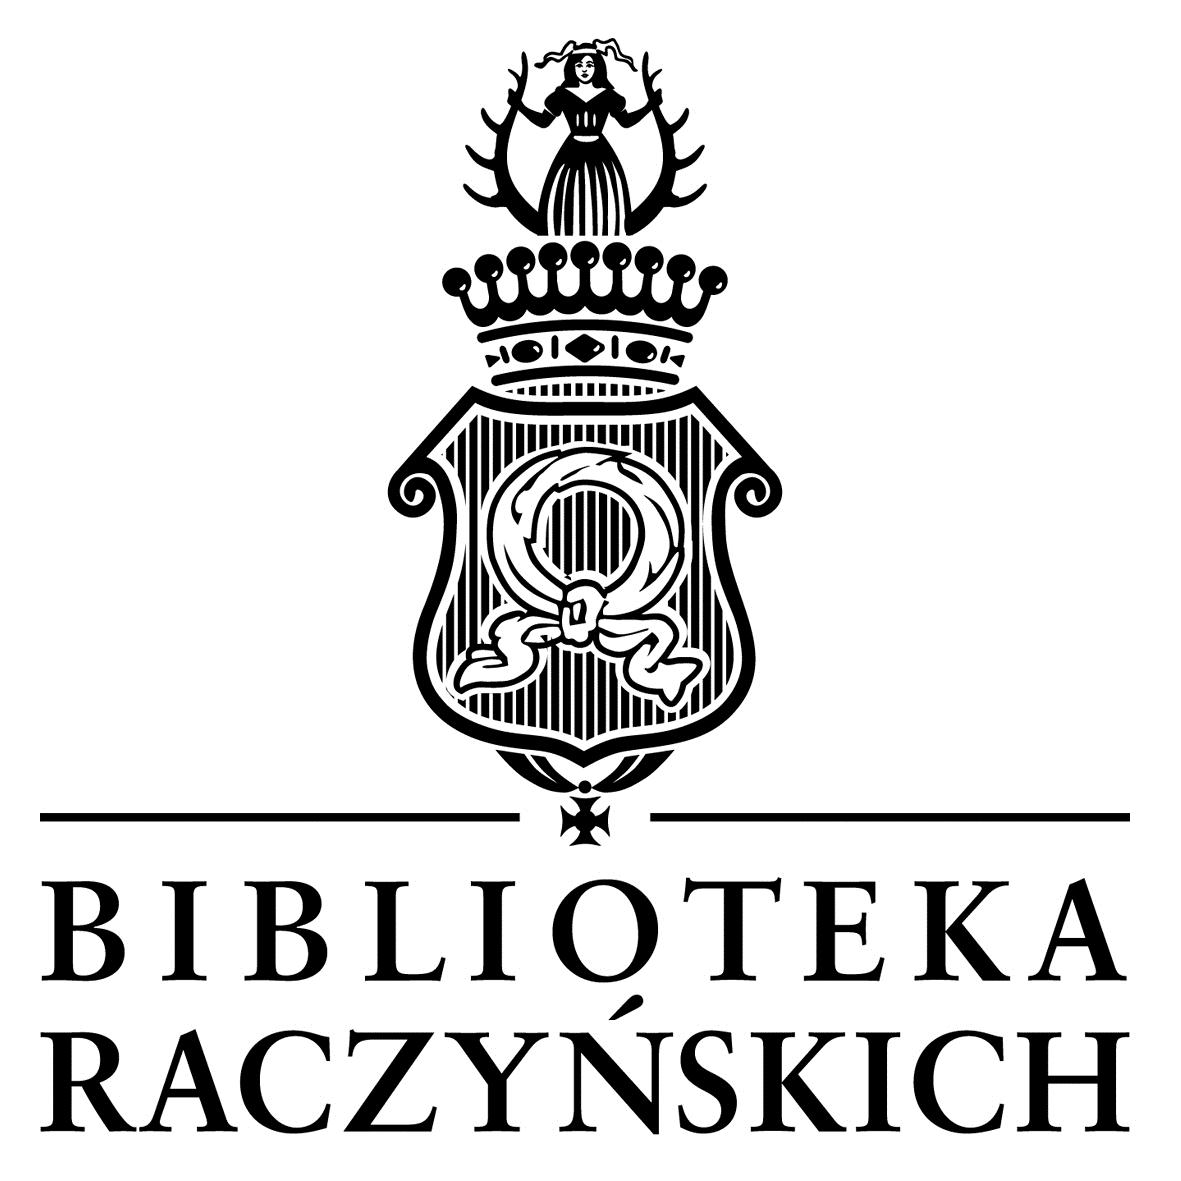  Biblioteka im. Raczyńskich